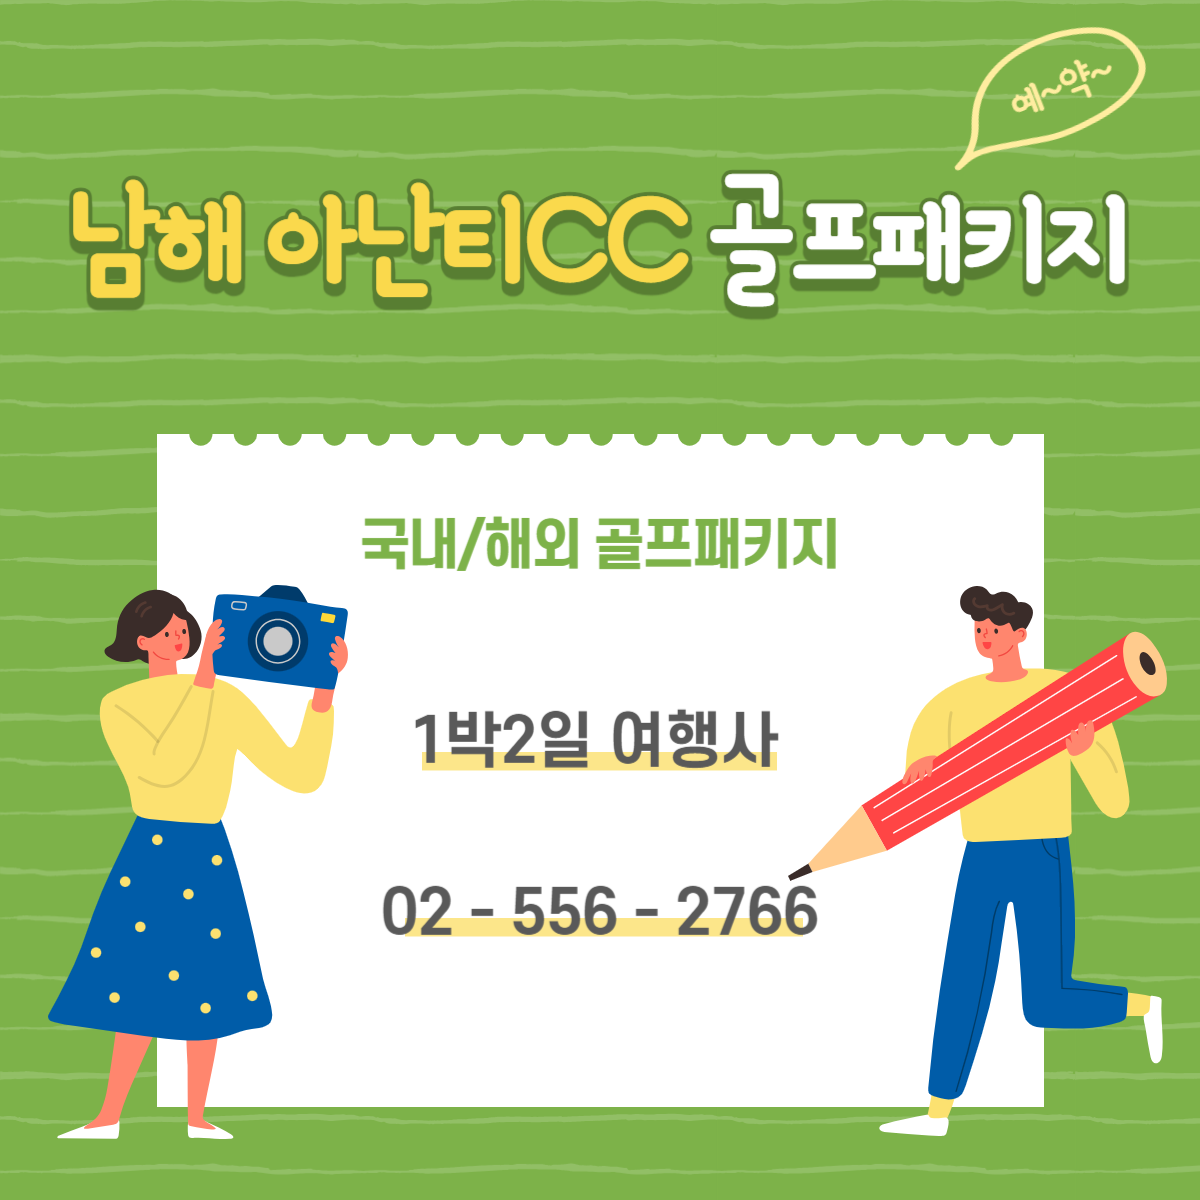 아난티 남해CC 힐튼남해 11월 1박2일 골프패키지 예약 가격 (feat.날씨)